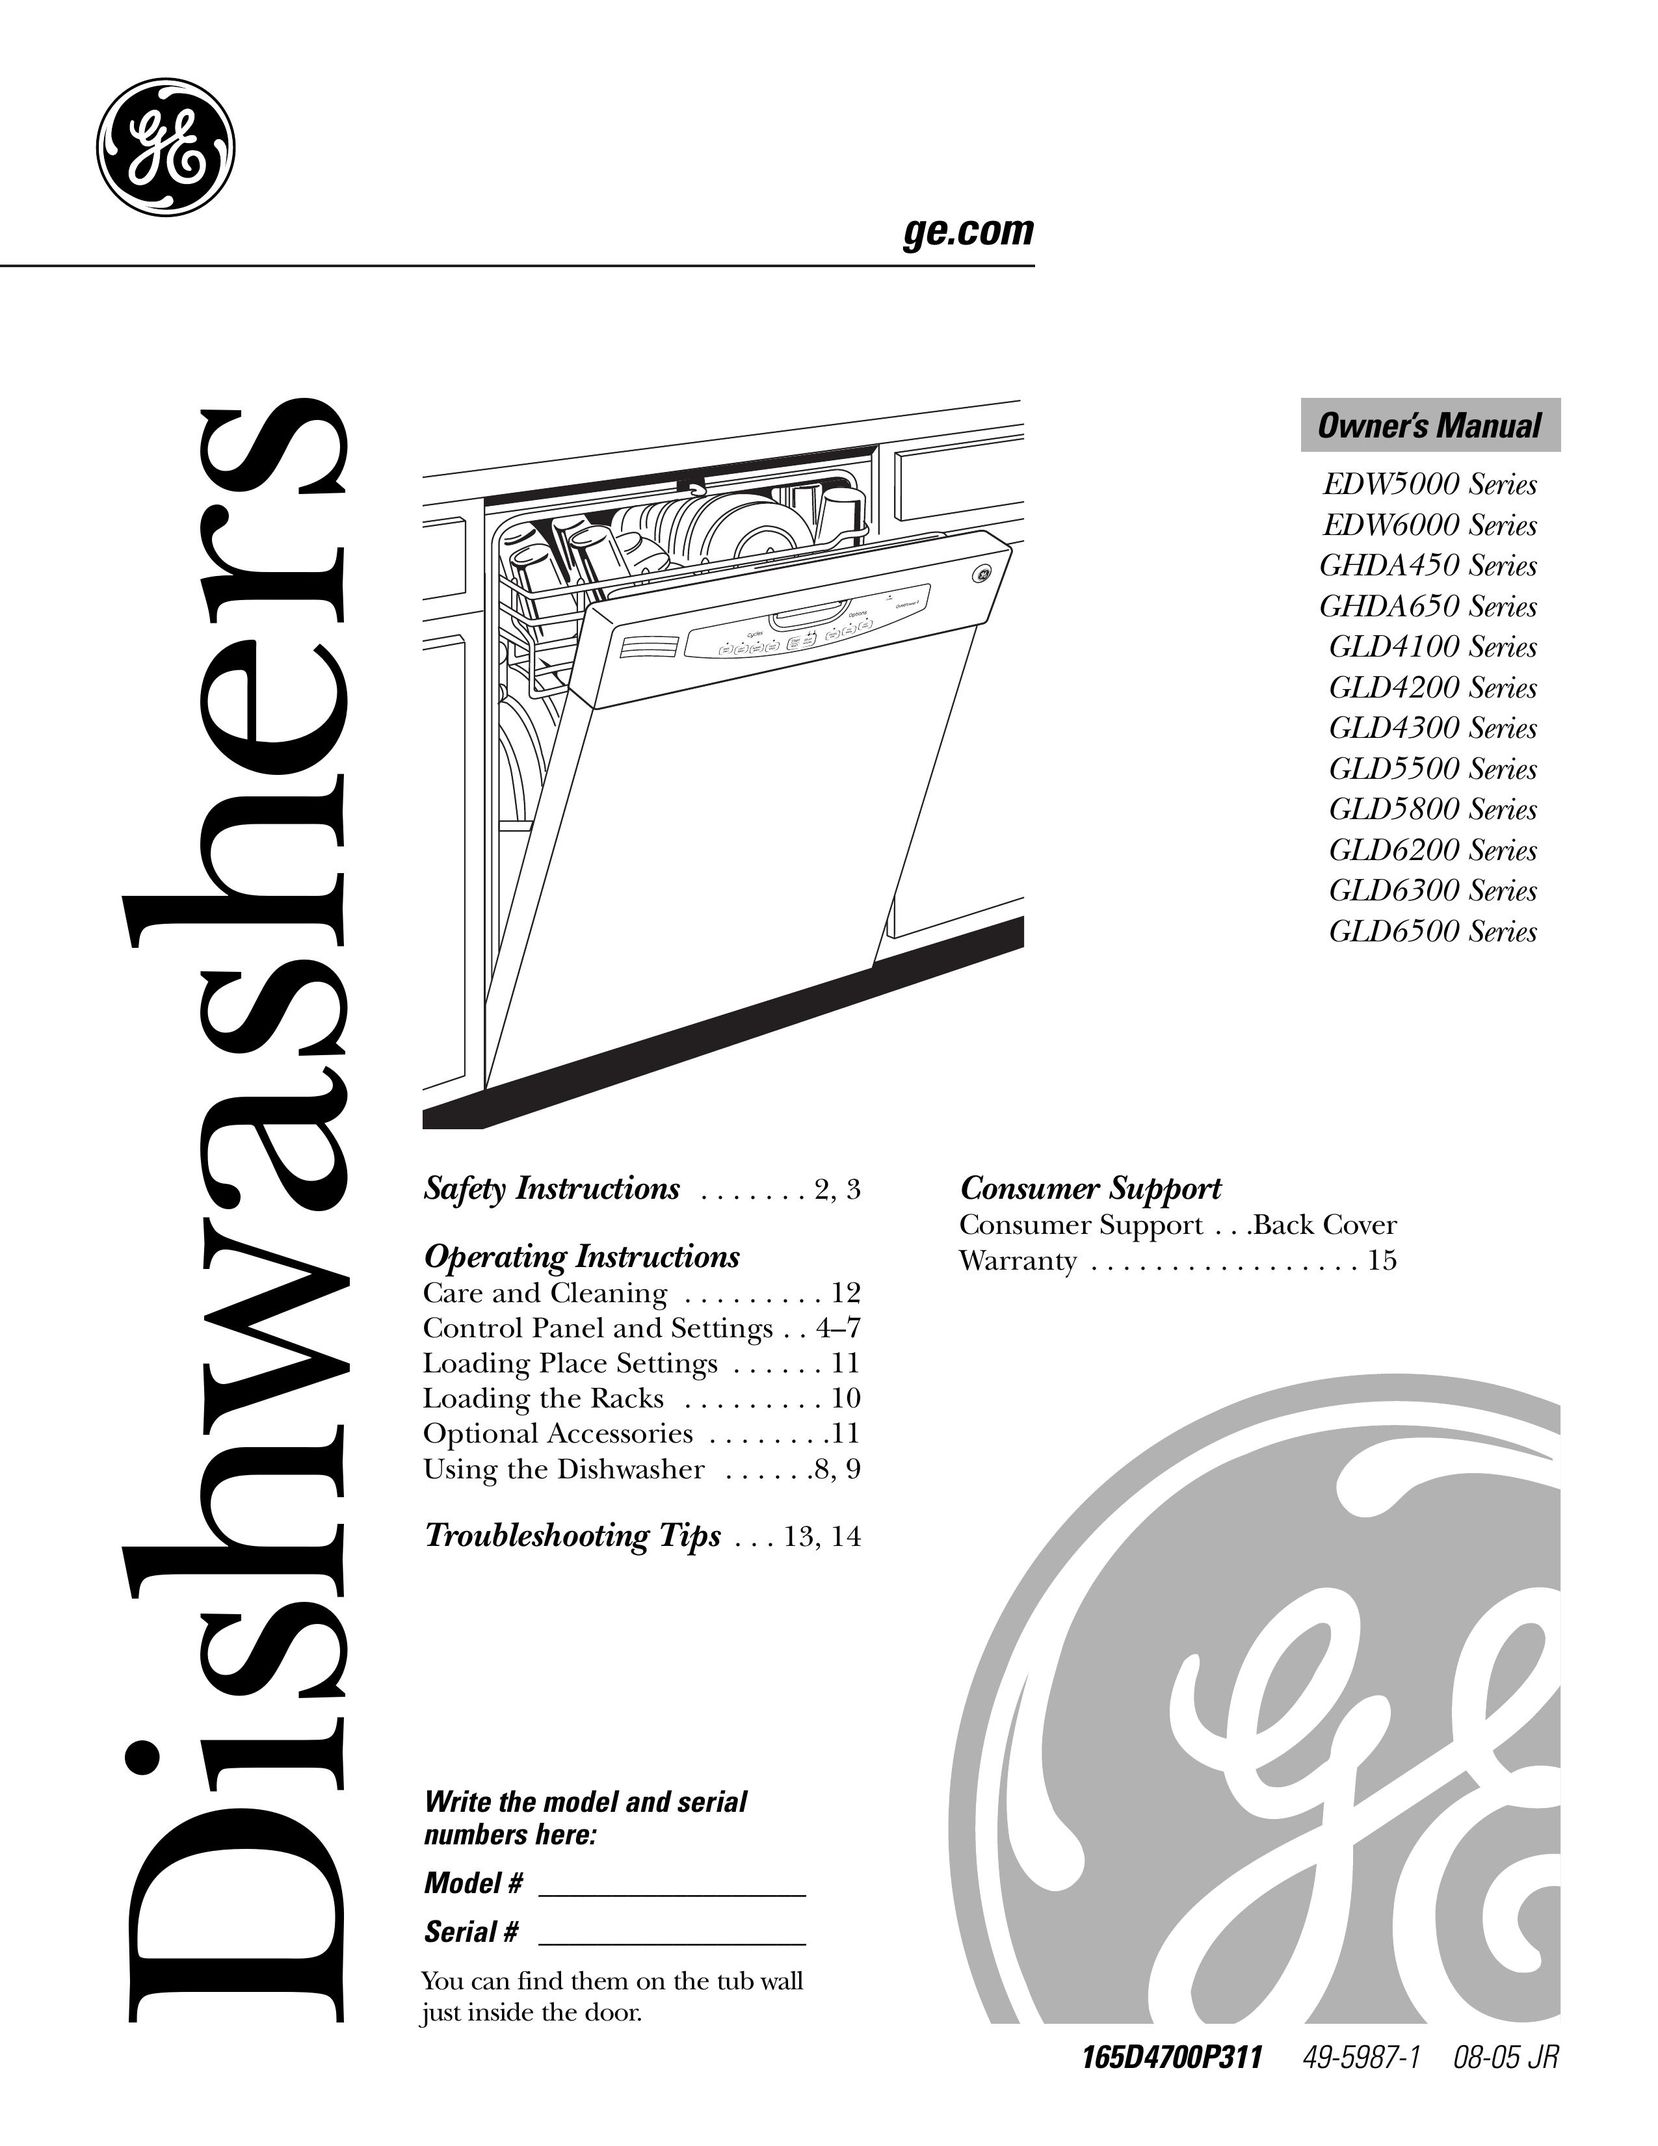 GE Monogram GLD6500 Dishwasher User Manual